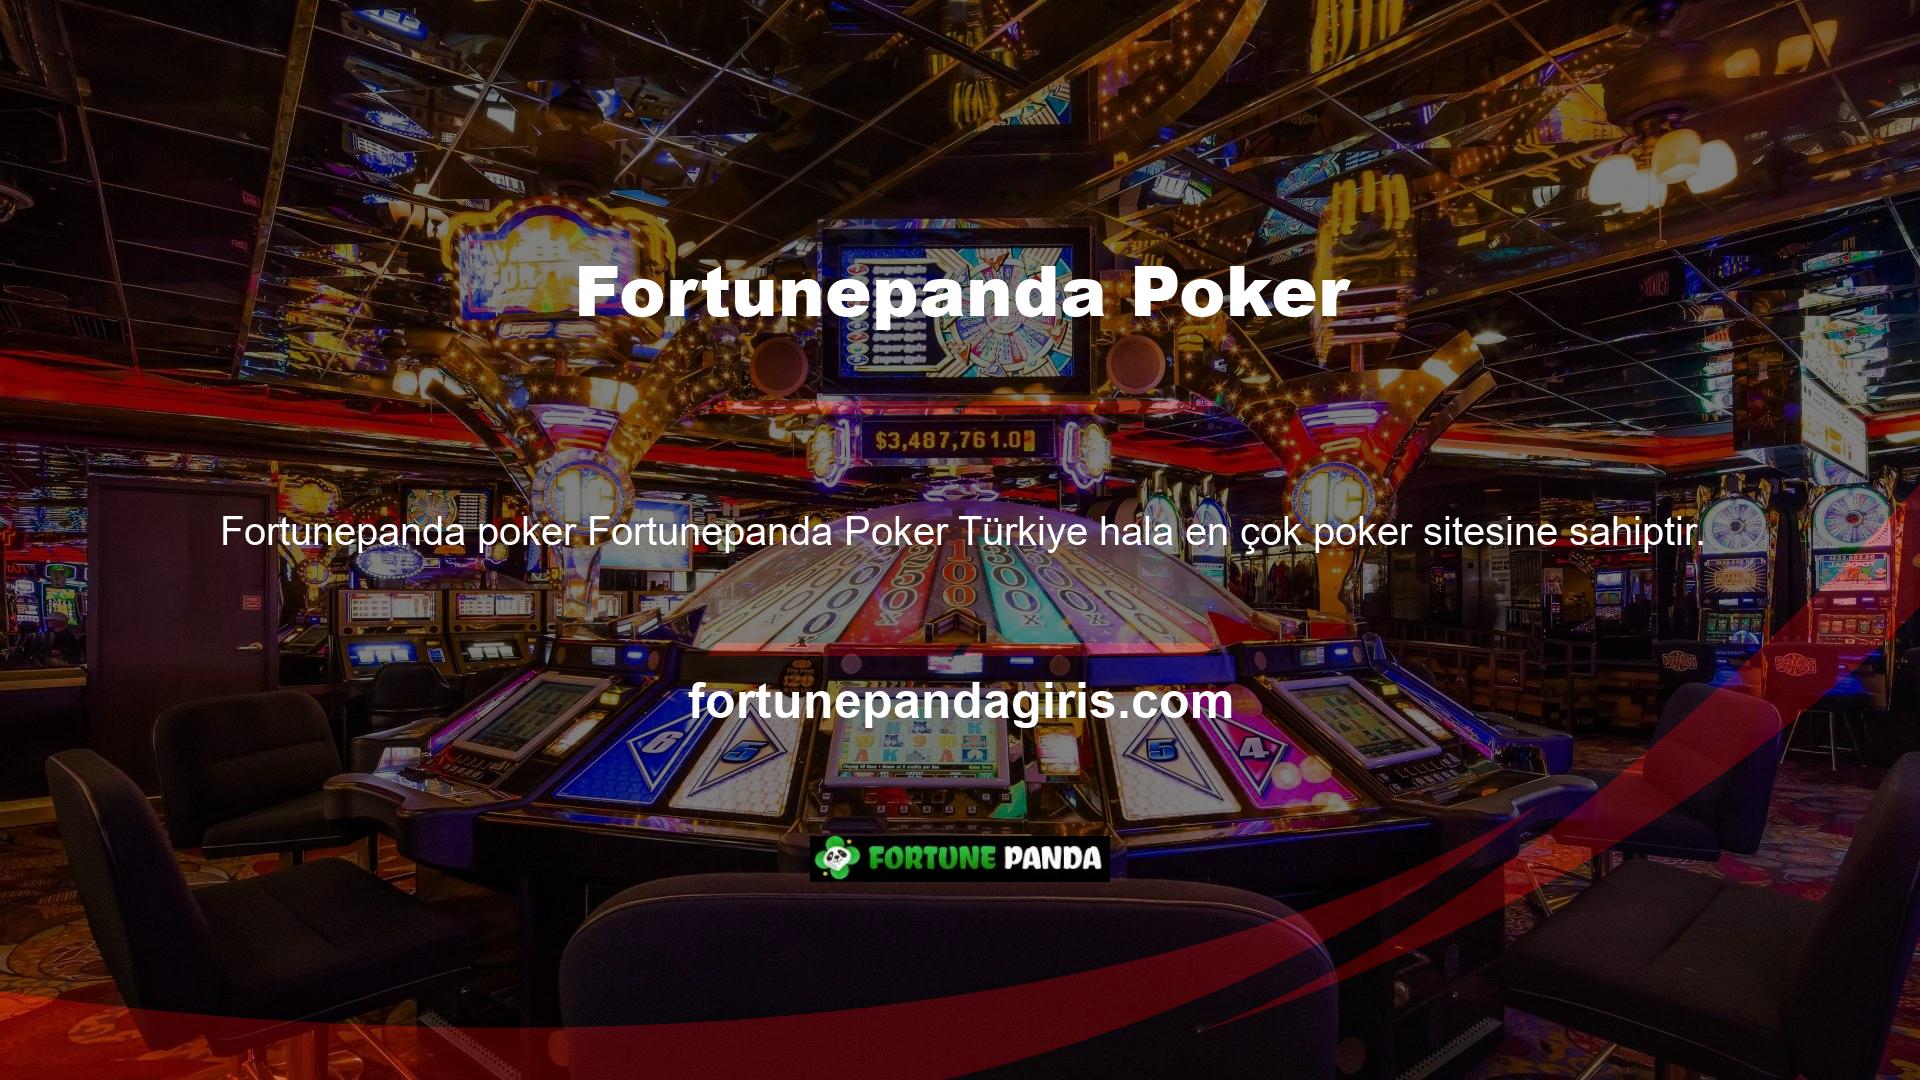 Pokerin yanı sıra canlı pokerde de oynanabilen bu oyun, casino sitelerinde bulunan seçeneklerden biridir